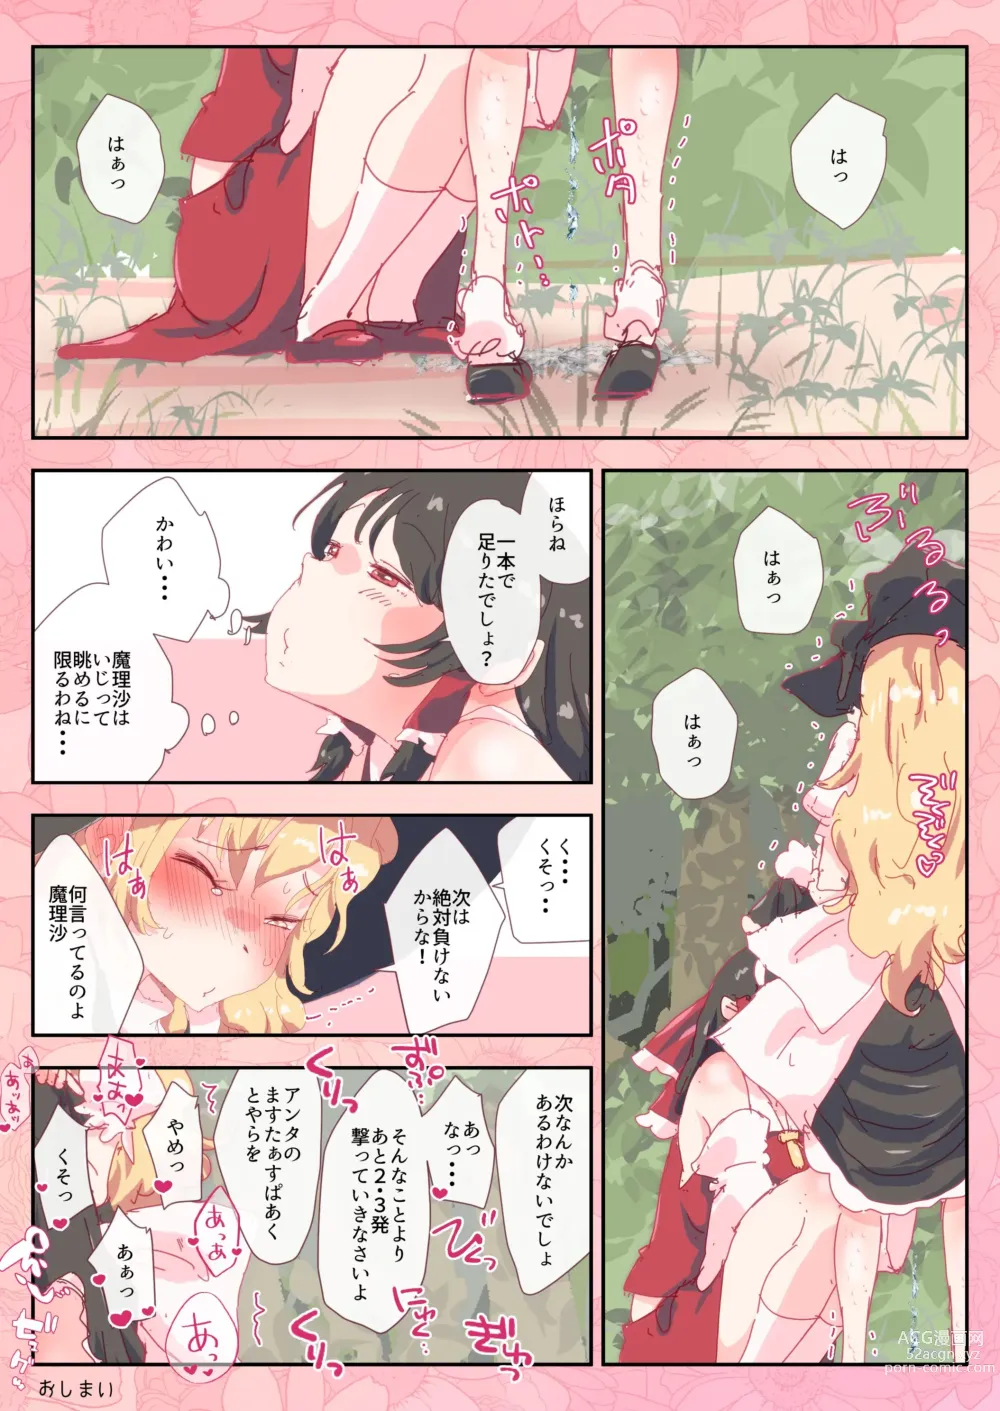 Page 7 of doujinshi Reimu-san wa Yubisaki Hitotsu de Marisa o Pichuraseru.